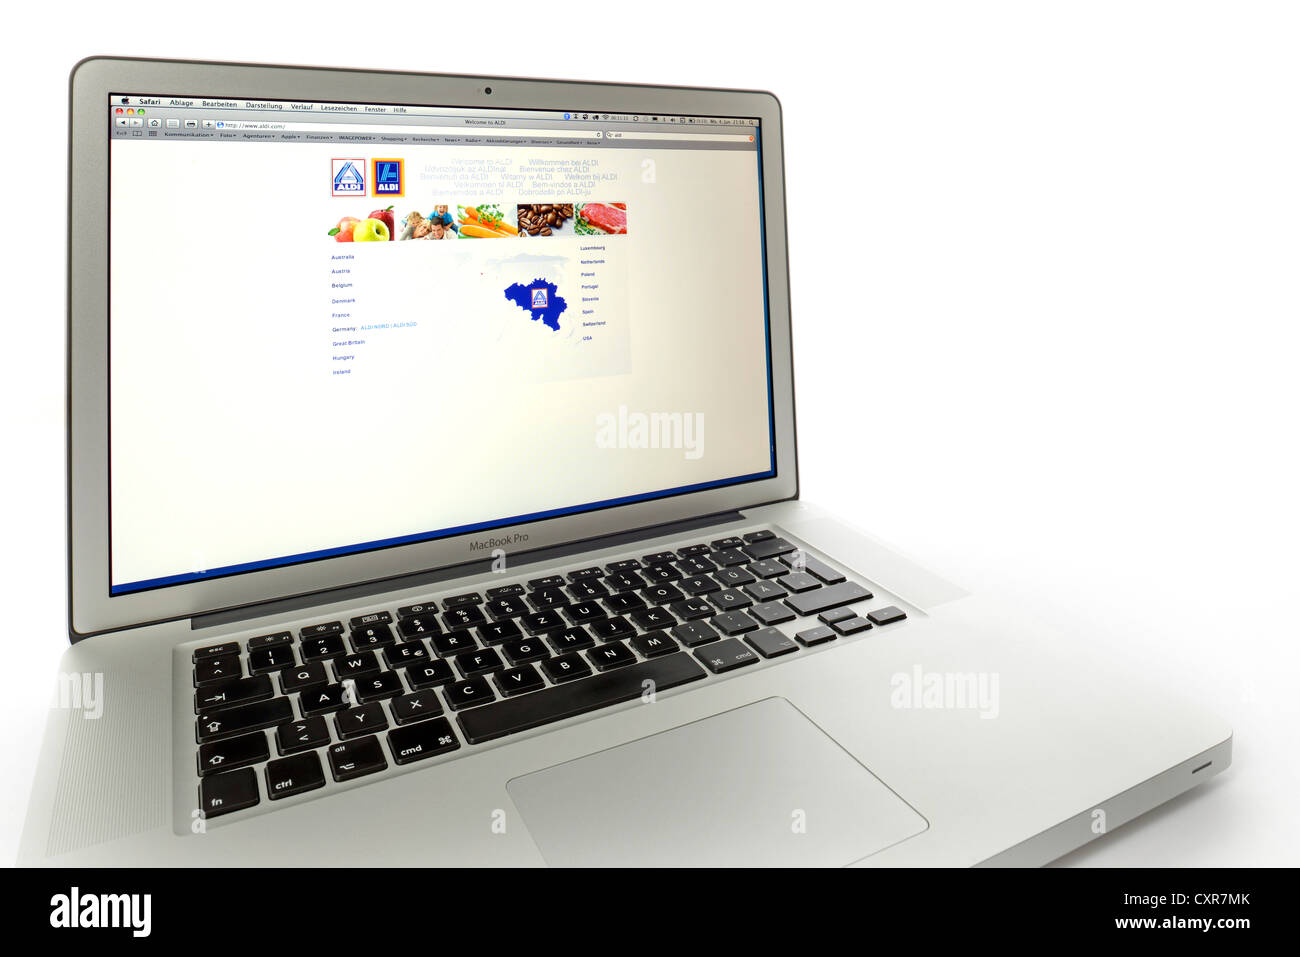 Aldi, alimentation, supermarché de l'escompteur, site web affiché sur l'écran d'un Apple MacBook Pro Banque D'Images